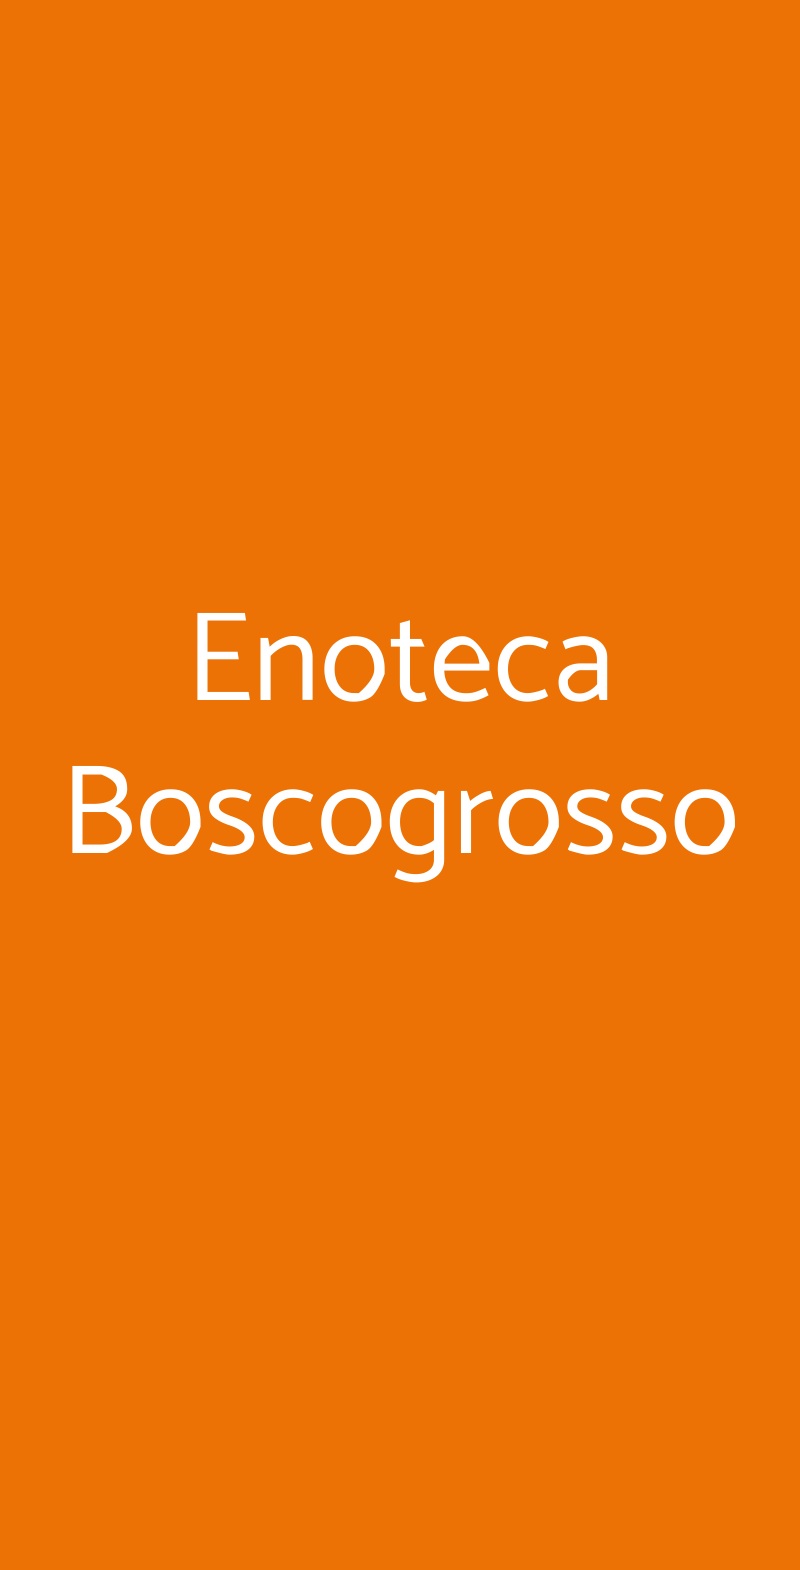 Enoteca Boscogrosso Milano menù 1 pagina